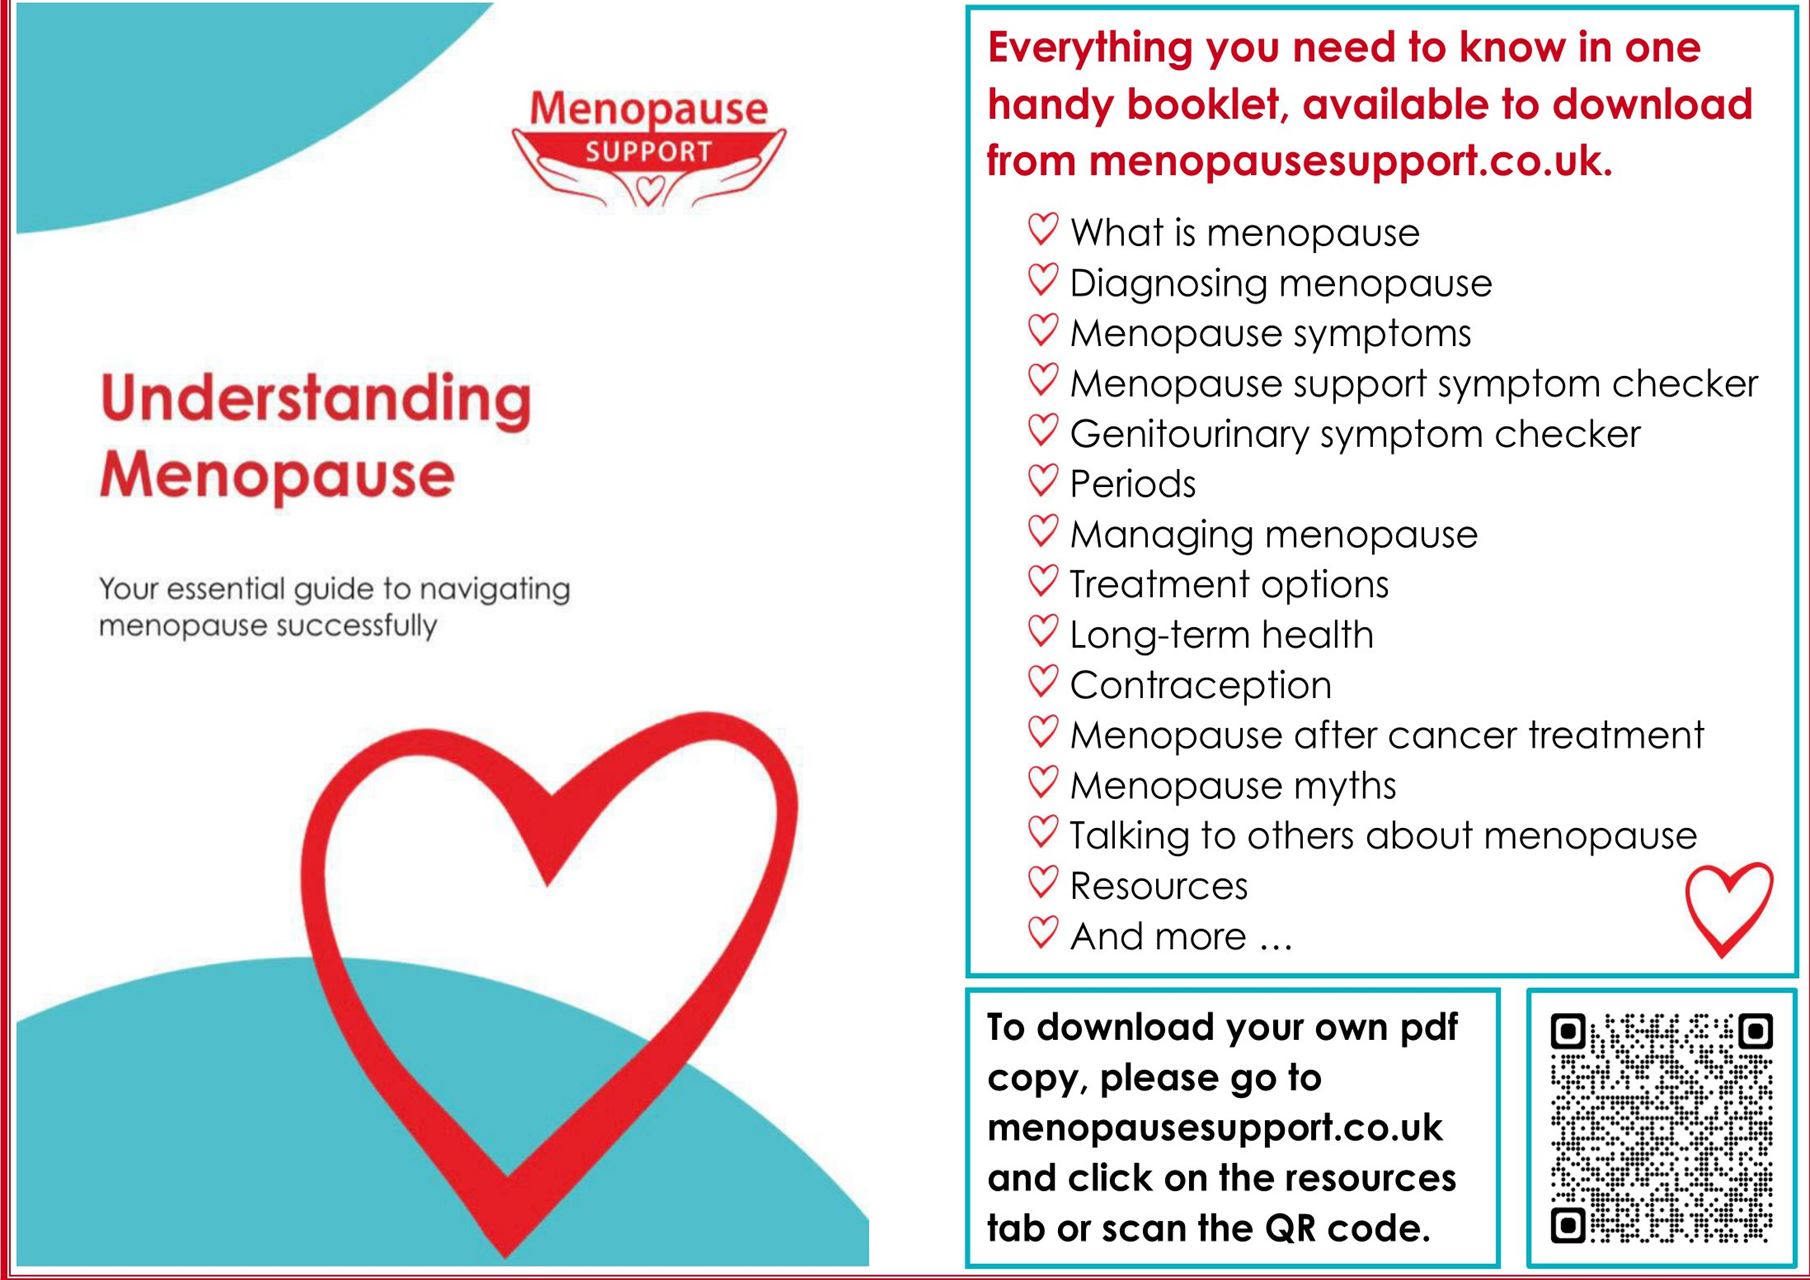 Understandinf menopause